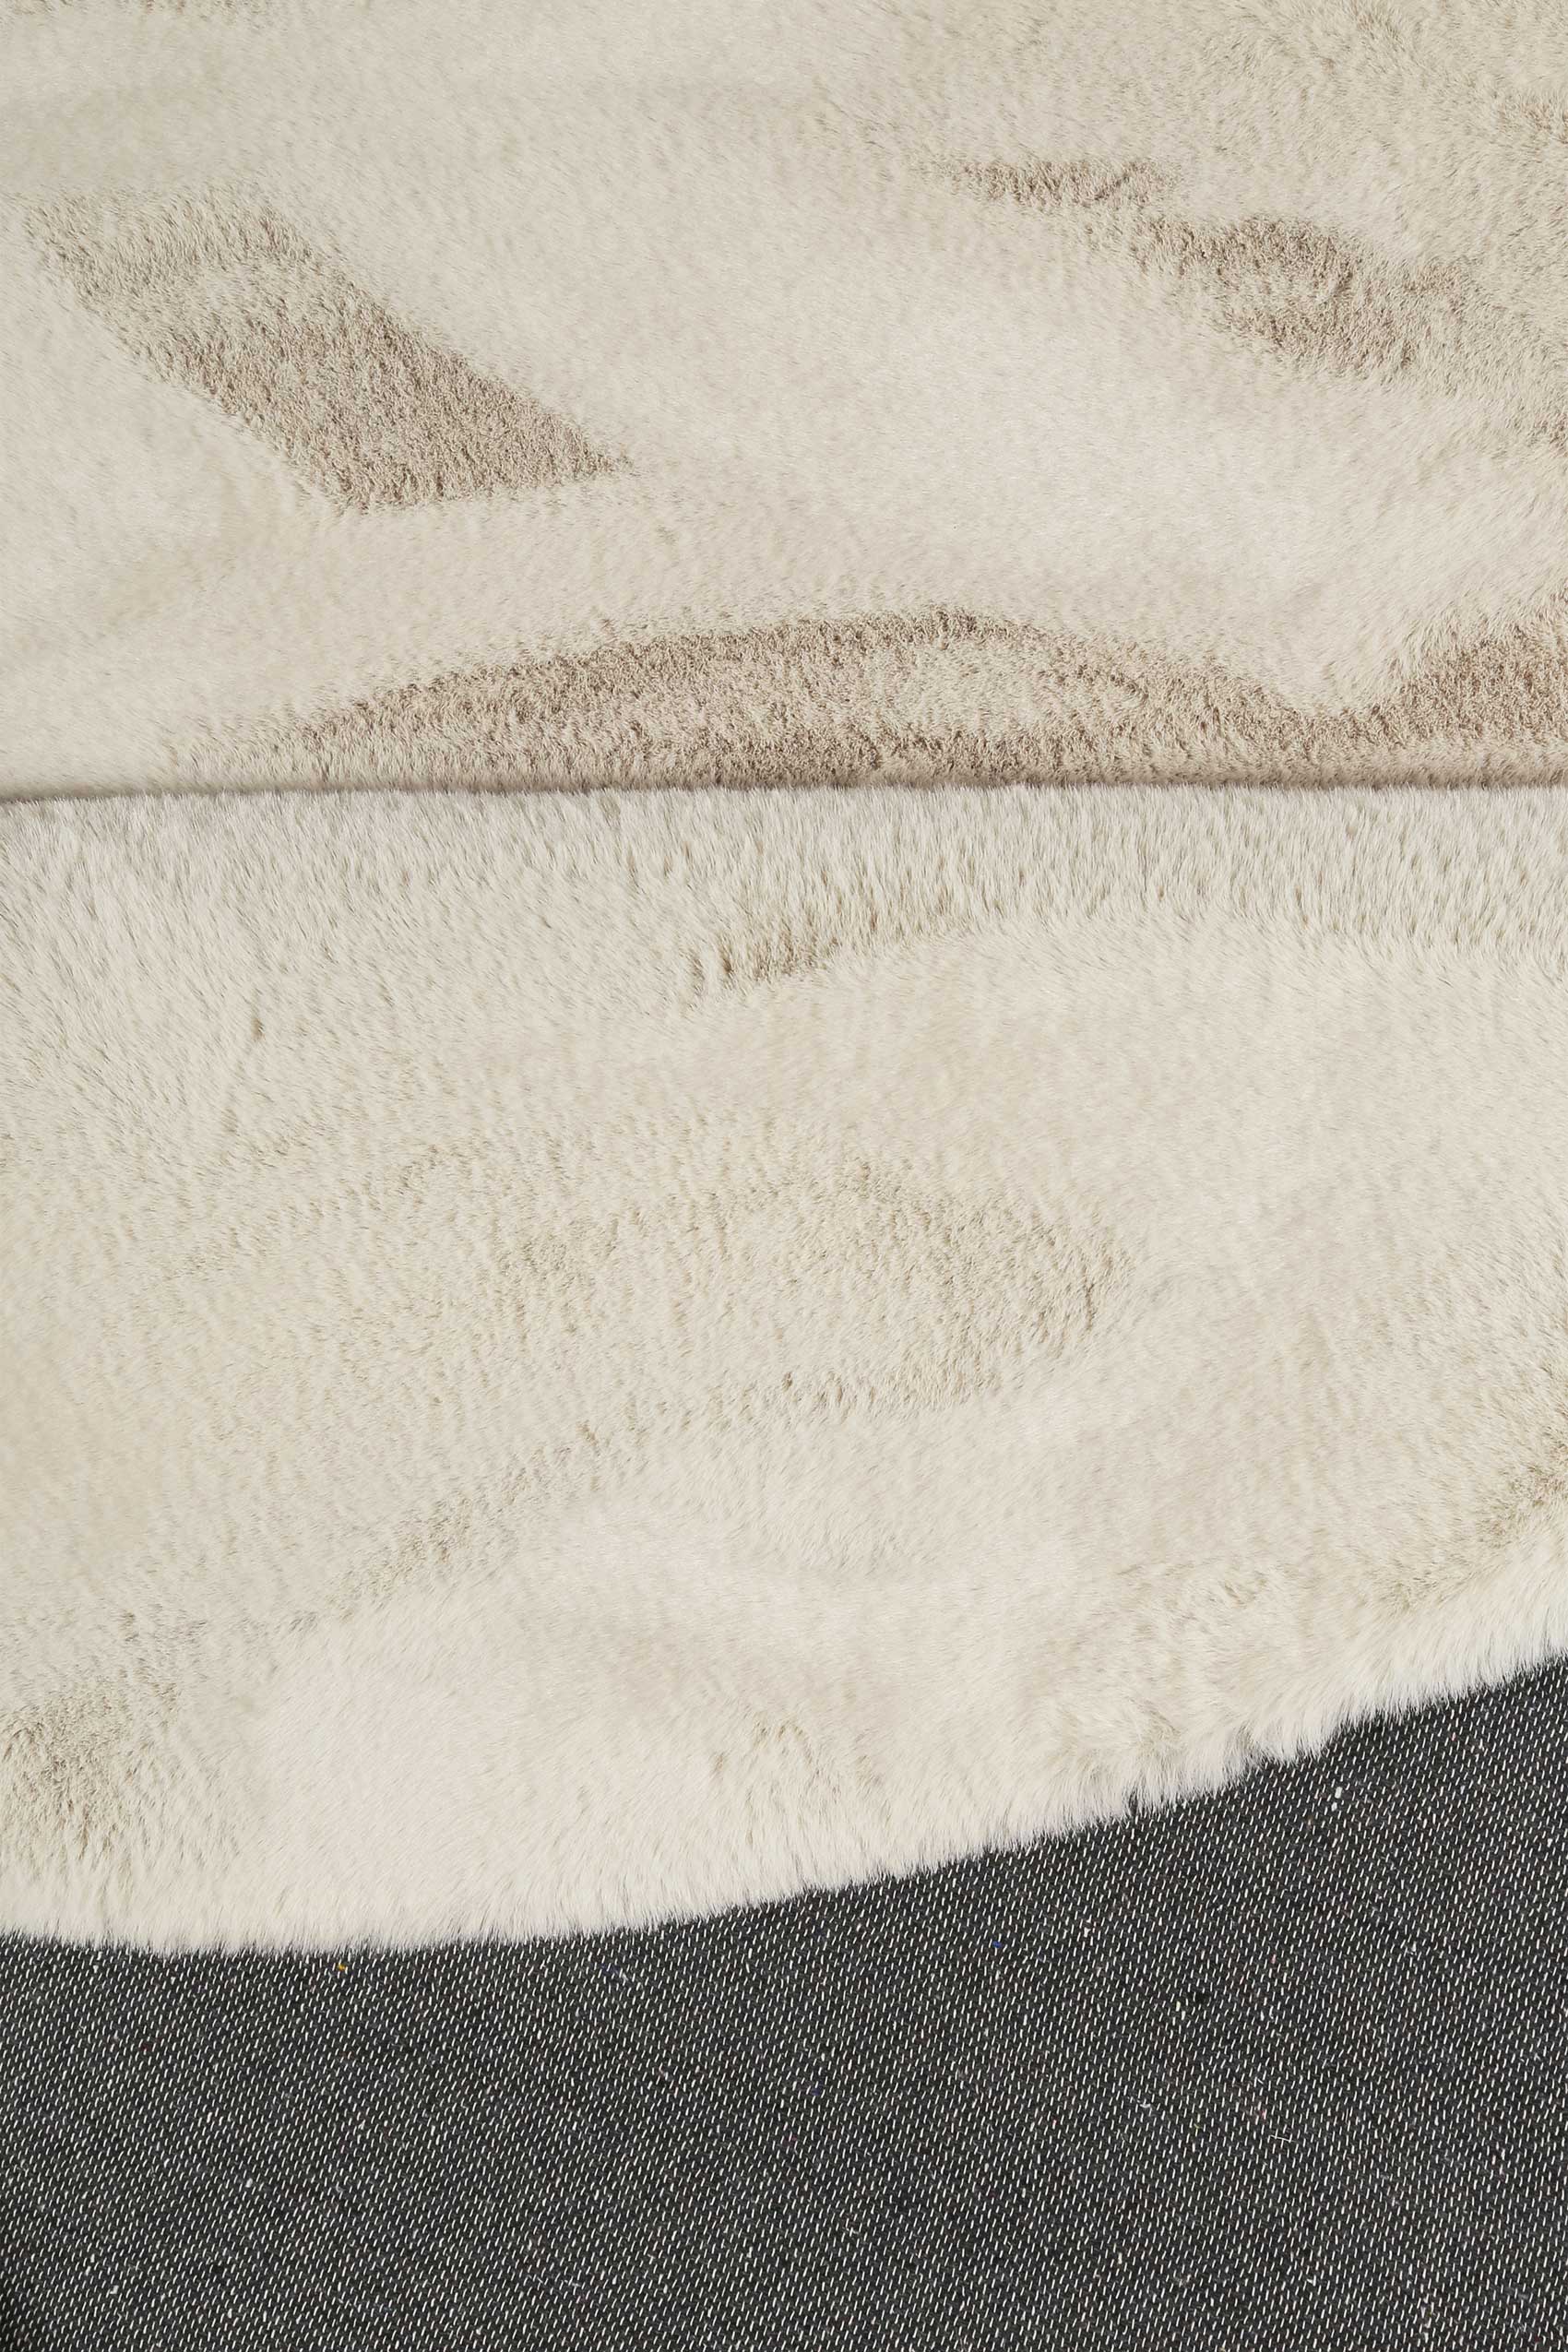 Esprit Teppich Rund Creme Beige und sehr flauschig Hochflor » Alice « - Ansicht 3